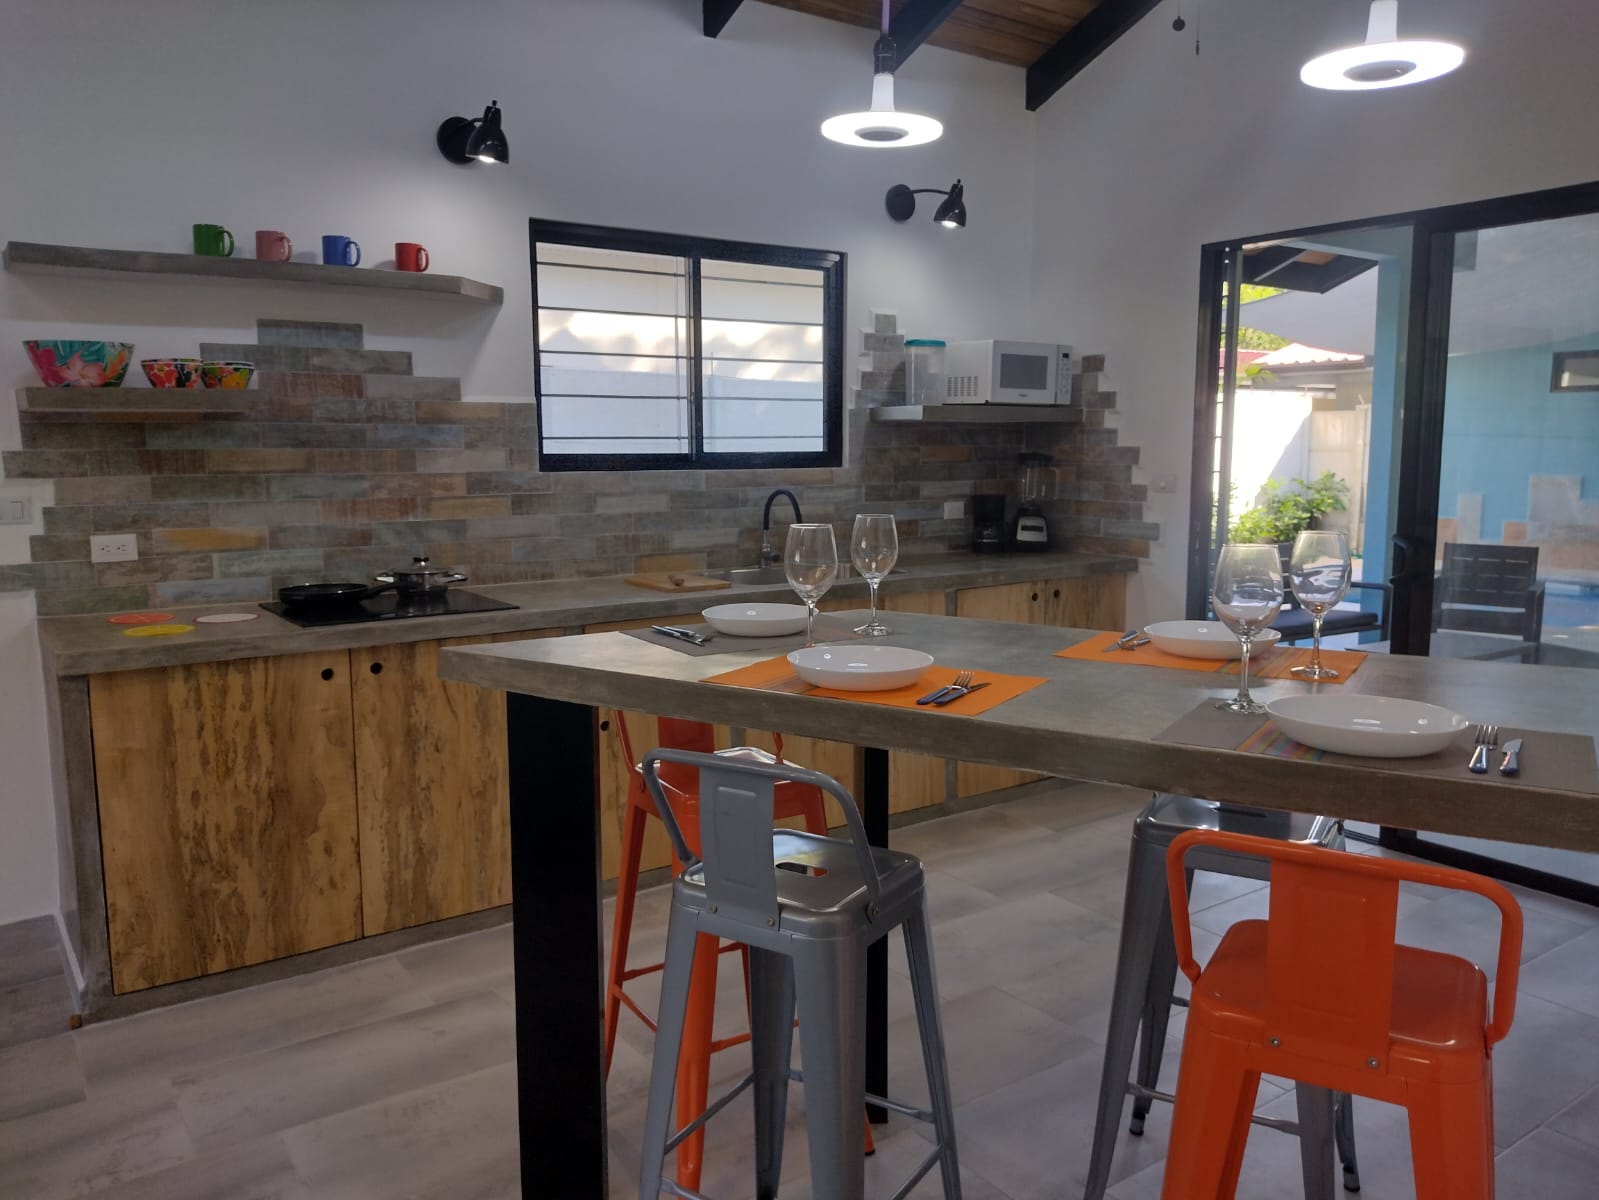 modern kitchen with breakfast bar in Casa espinoza home for sale samara costa rica